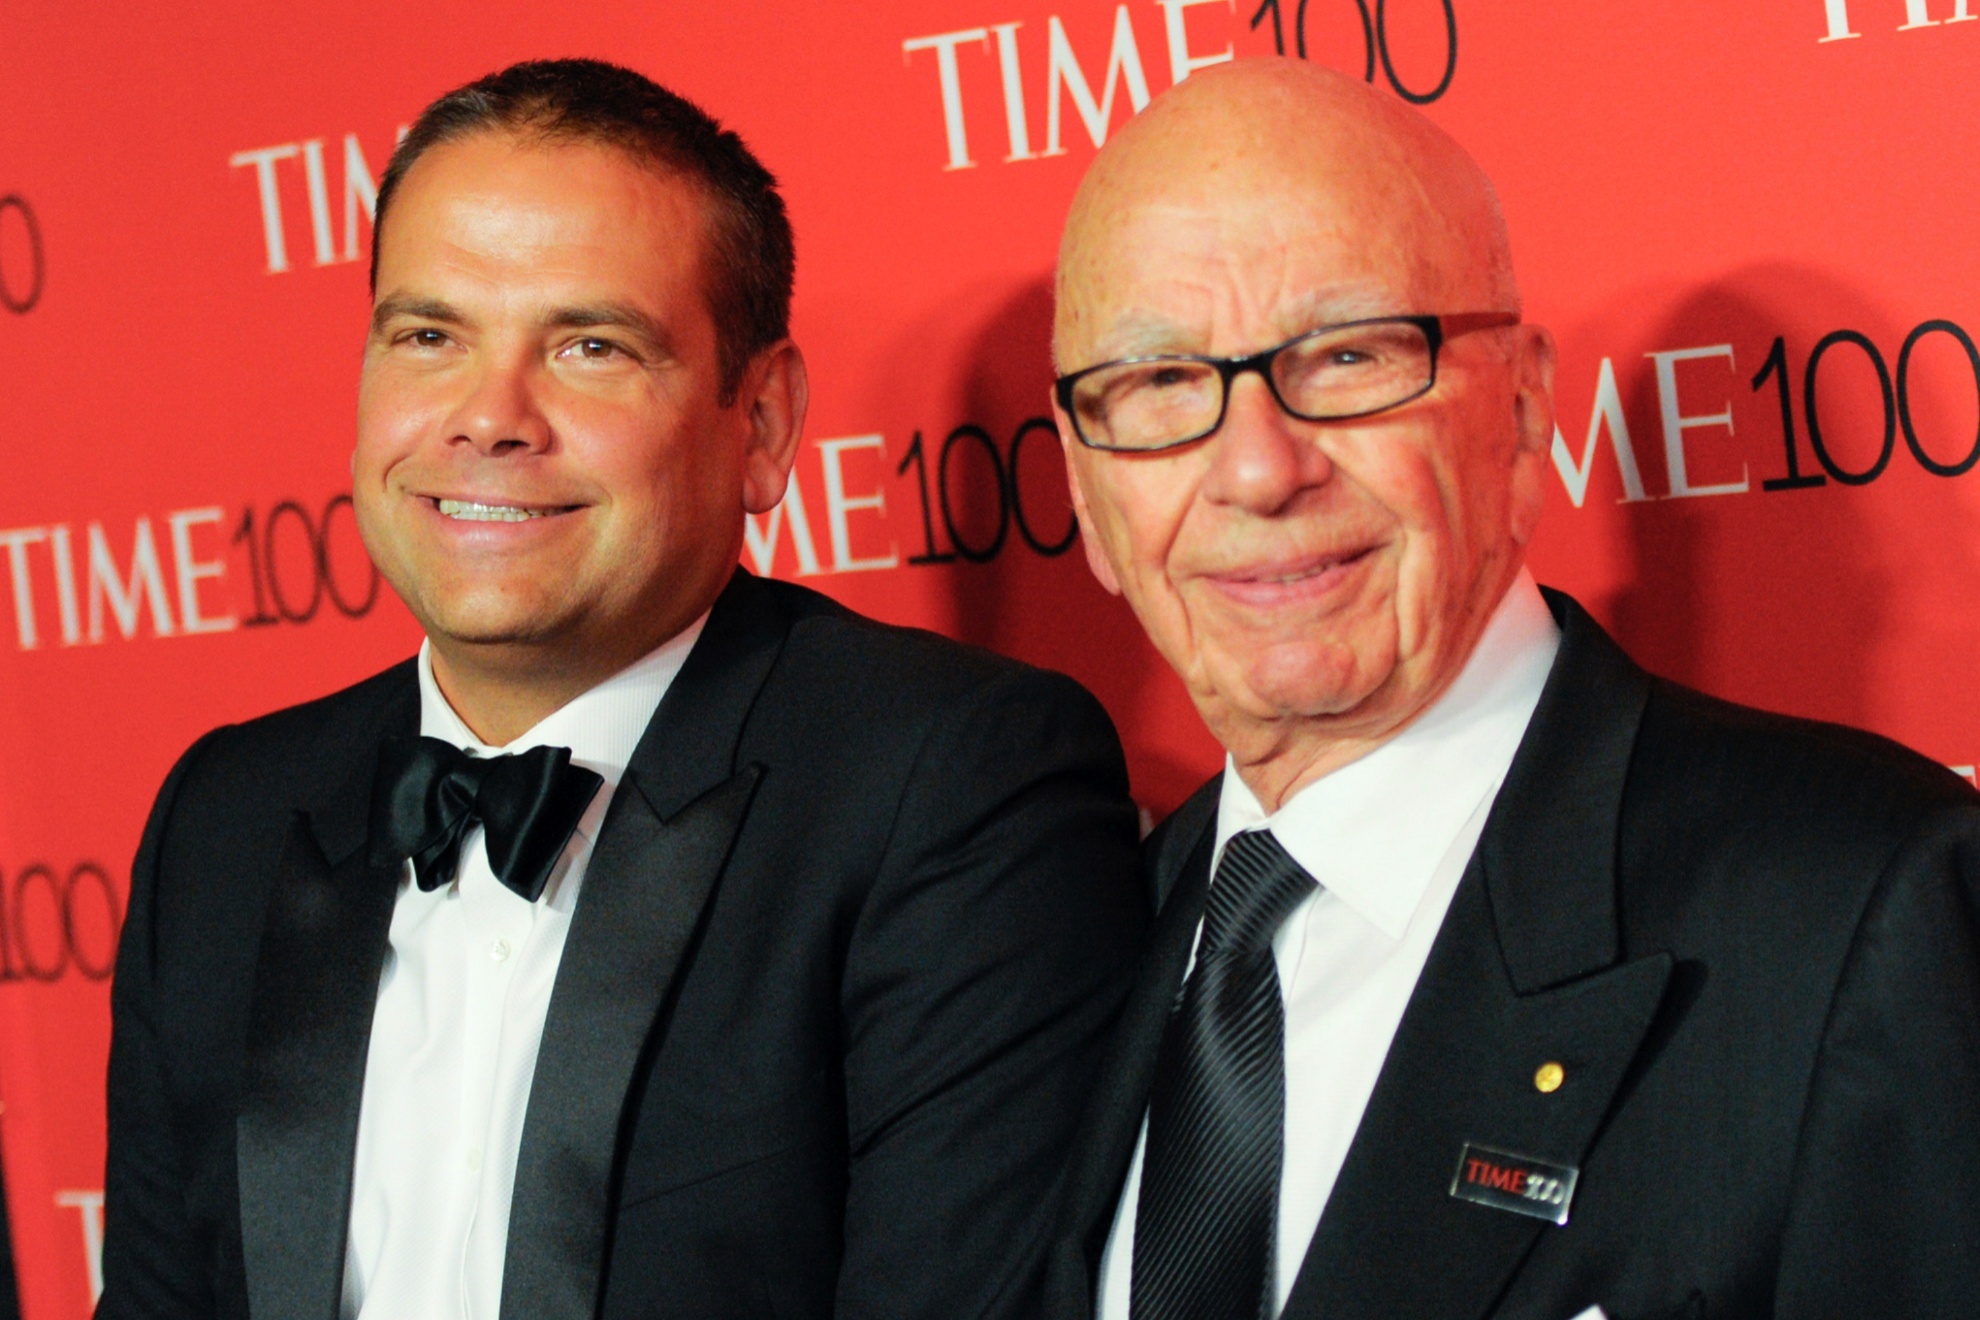 Lachlan Murdoch and his father, media mogul Rupert Murdoch.